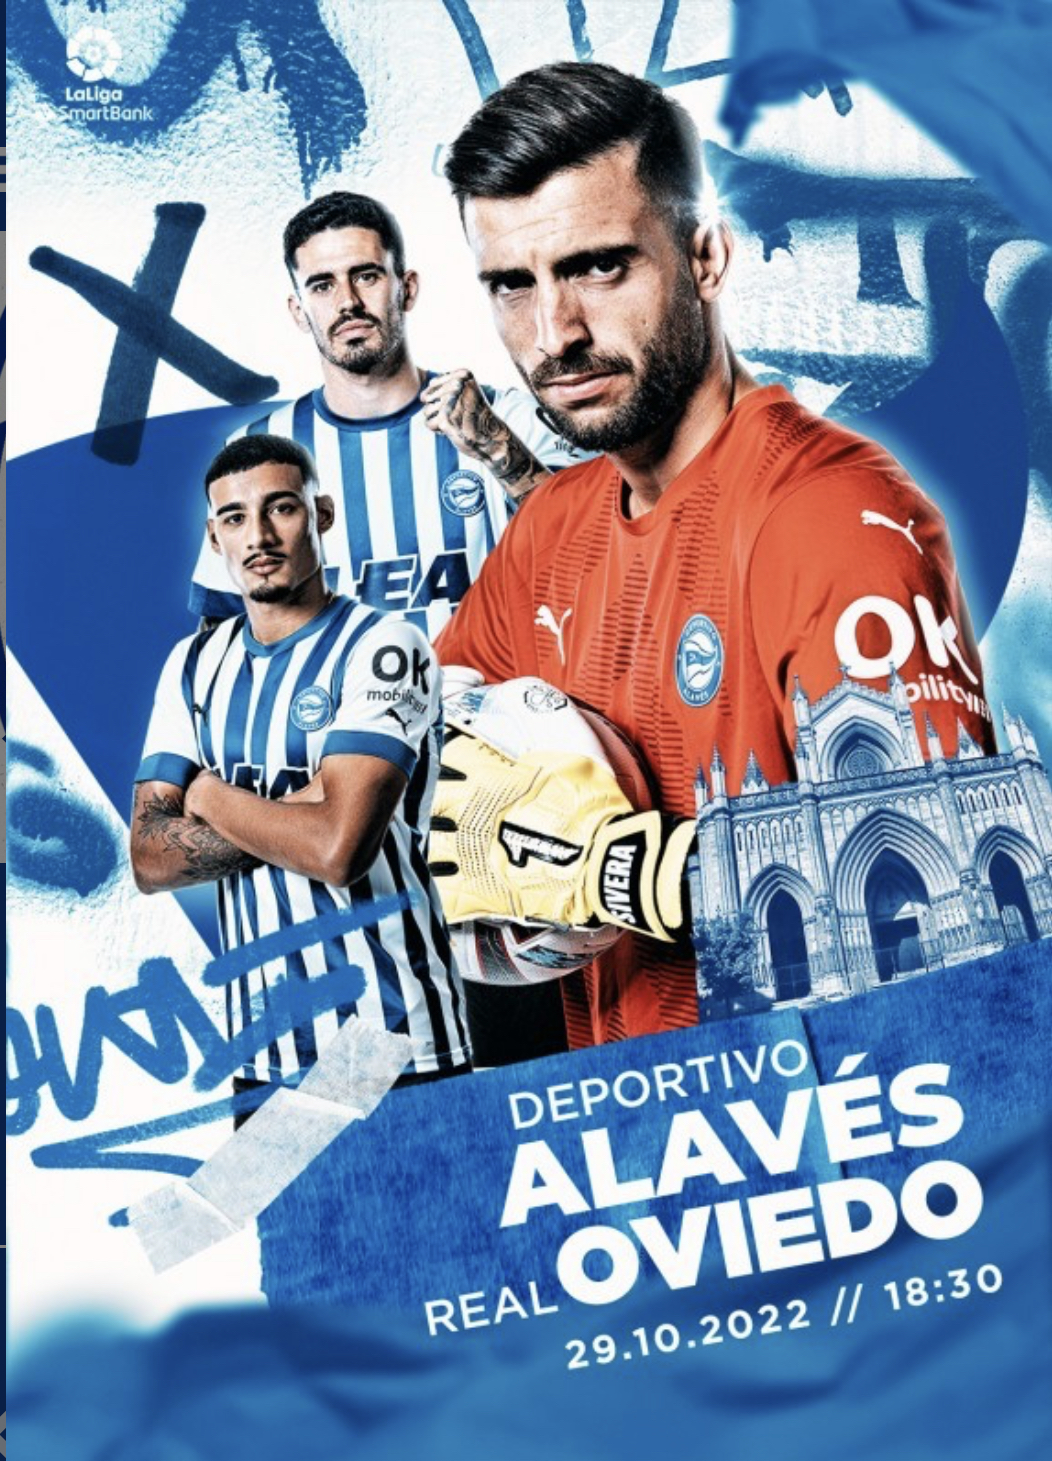 Equipo premiado con dos entradas para presenciar en directo el encuentro de Liga 123, DeportIvo Alavés-Real Oviedo.